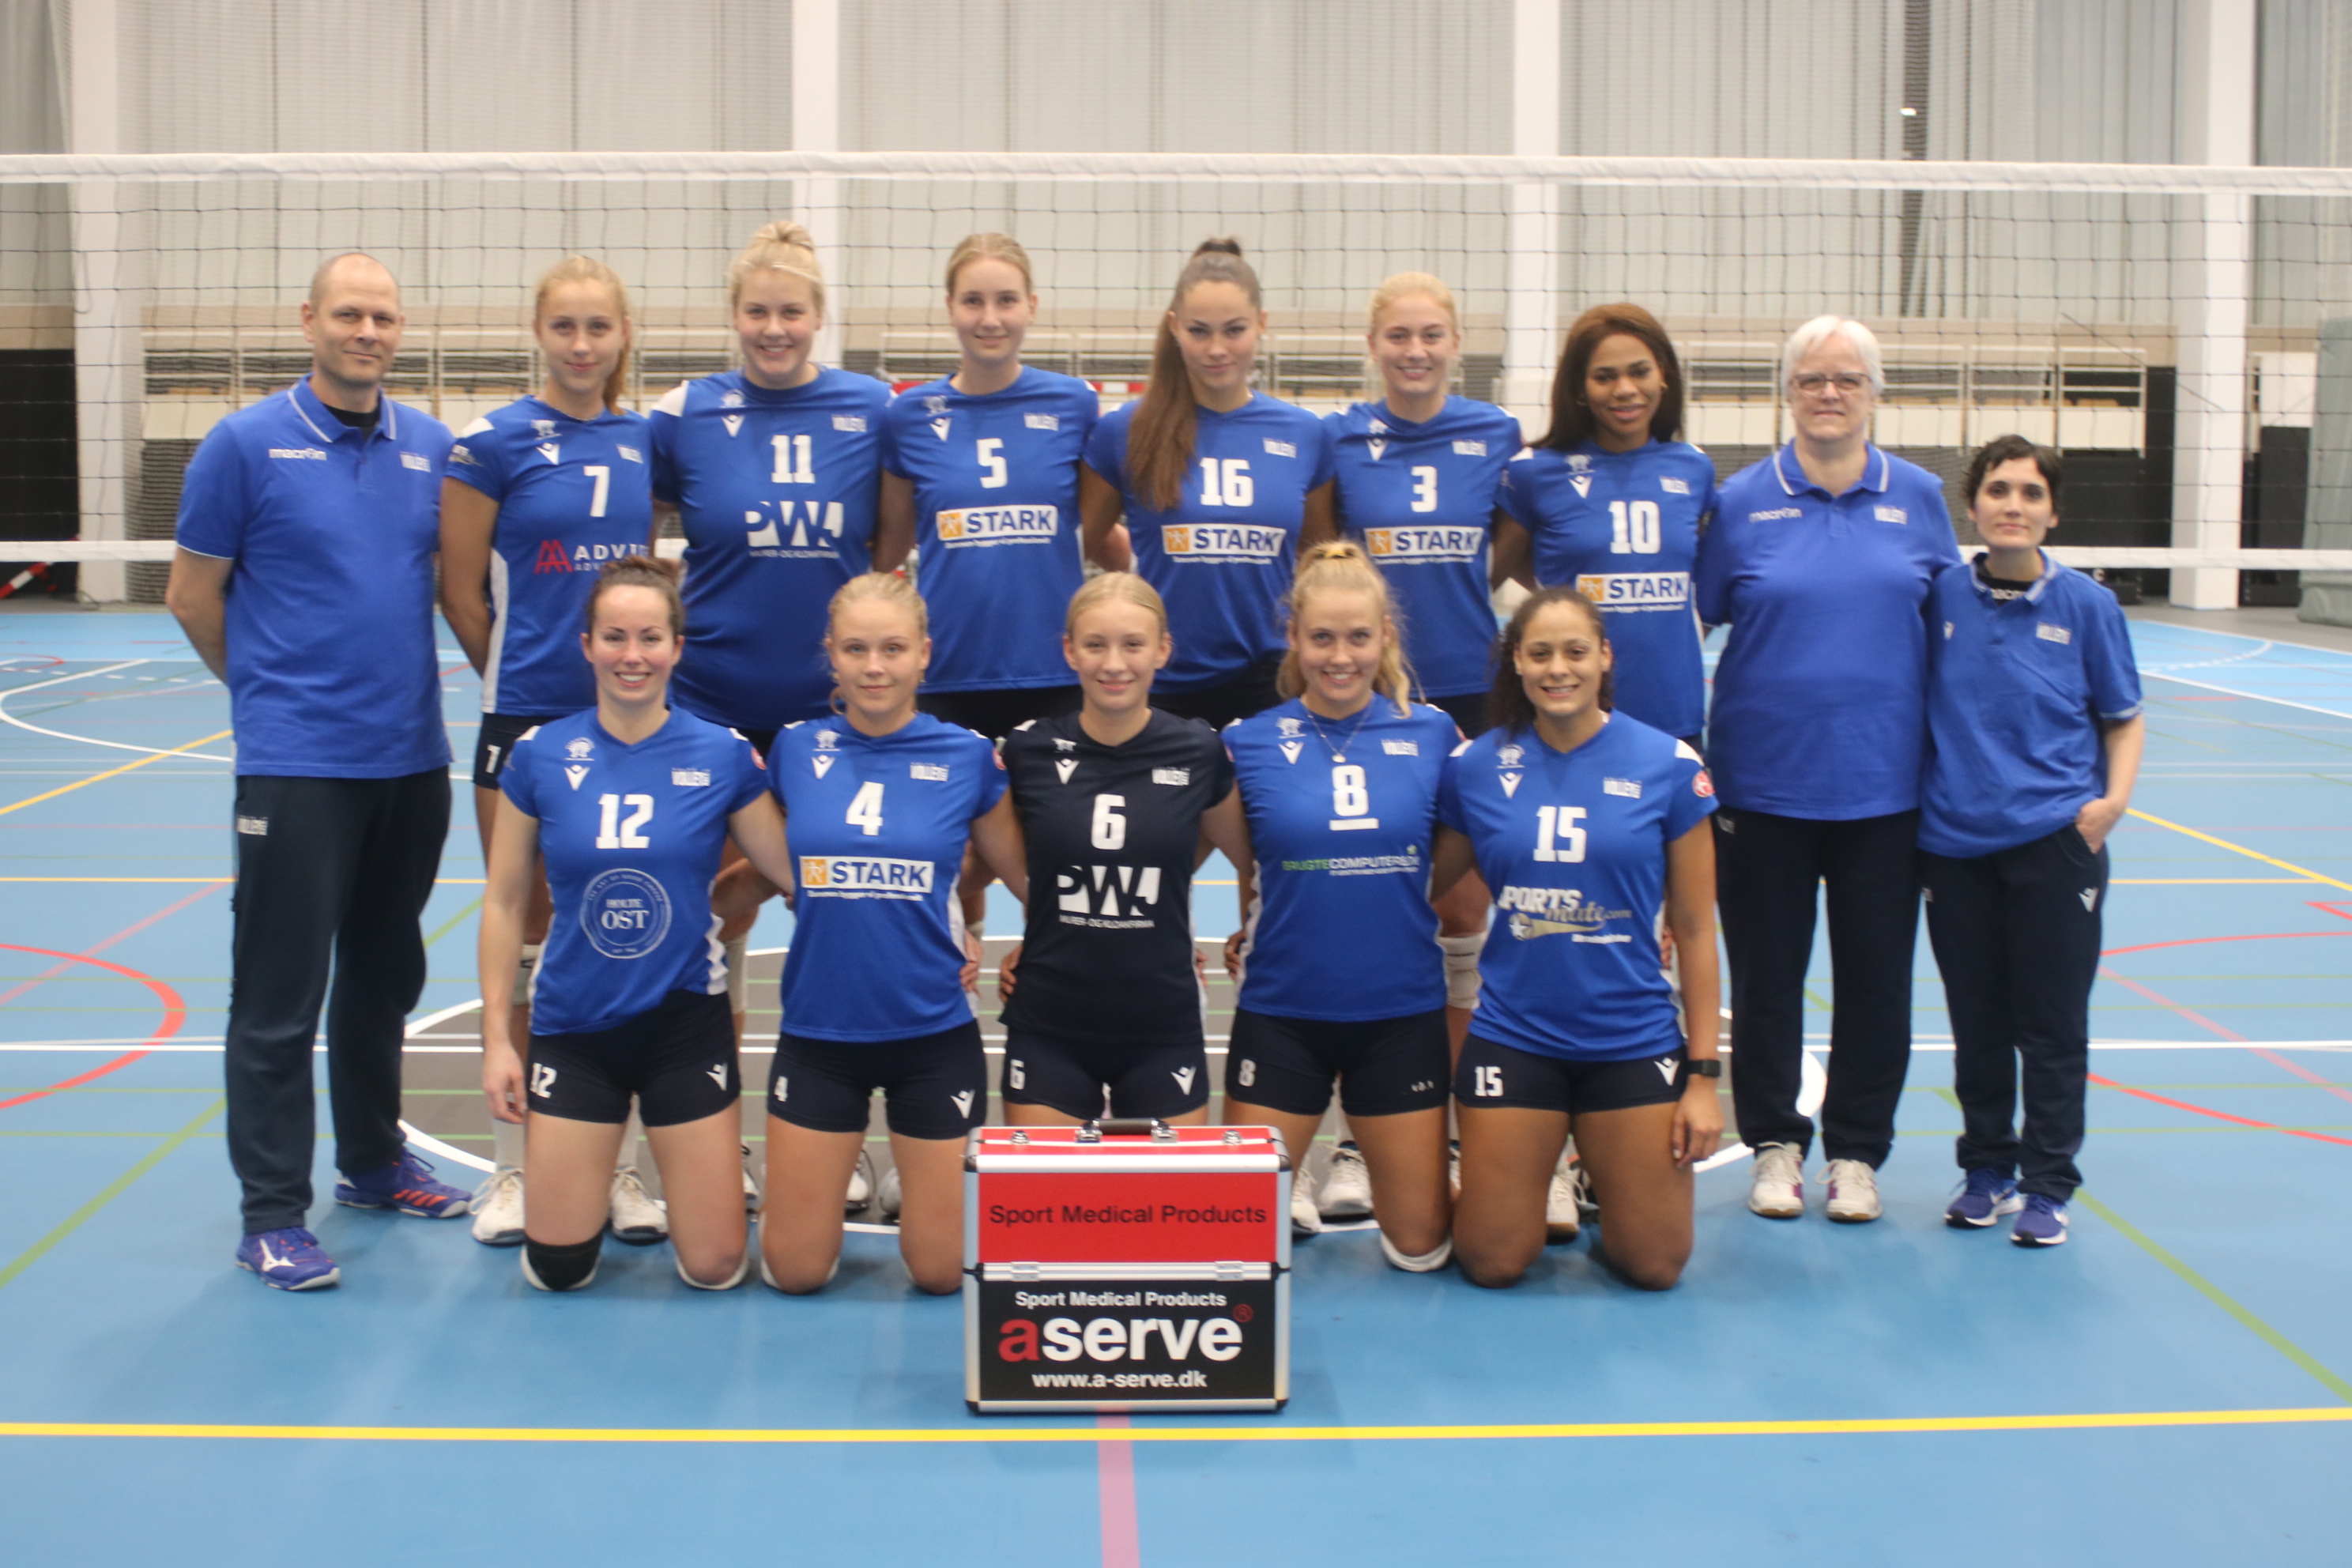 Holte Volleyball Damer, Dansk mester og pokalvinder 2021.